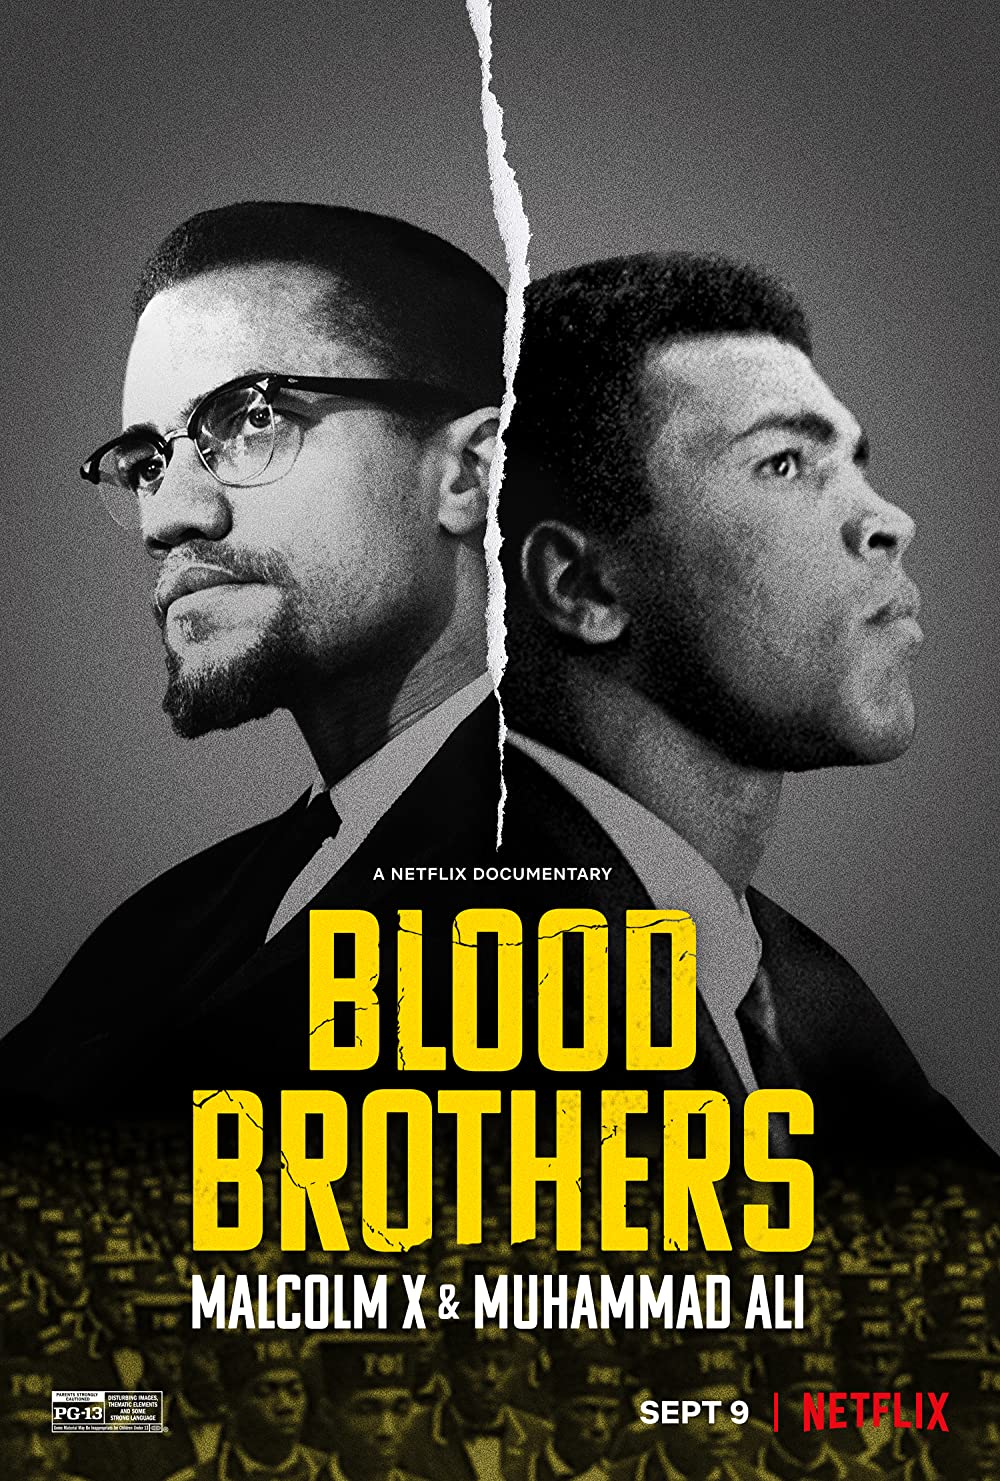 ดูหนังออนไลน์ฟรี Blood Brothers Malcolm X & Muhammad Ali (2021) พี่น้องร่วมเลือด มัลคอล์ม เอ็กซ์ และมูฮัมหมัด อาลี